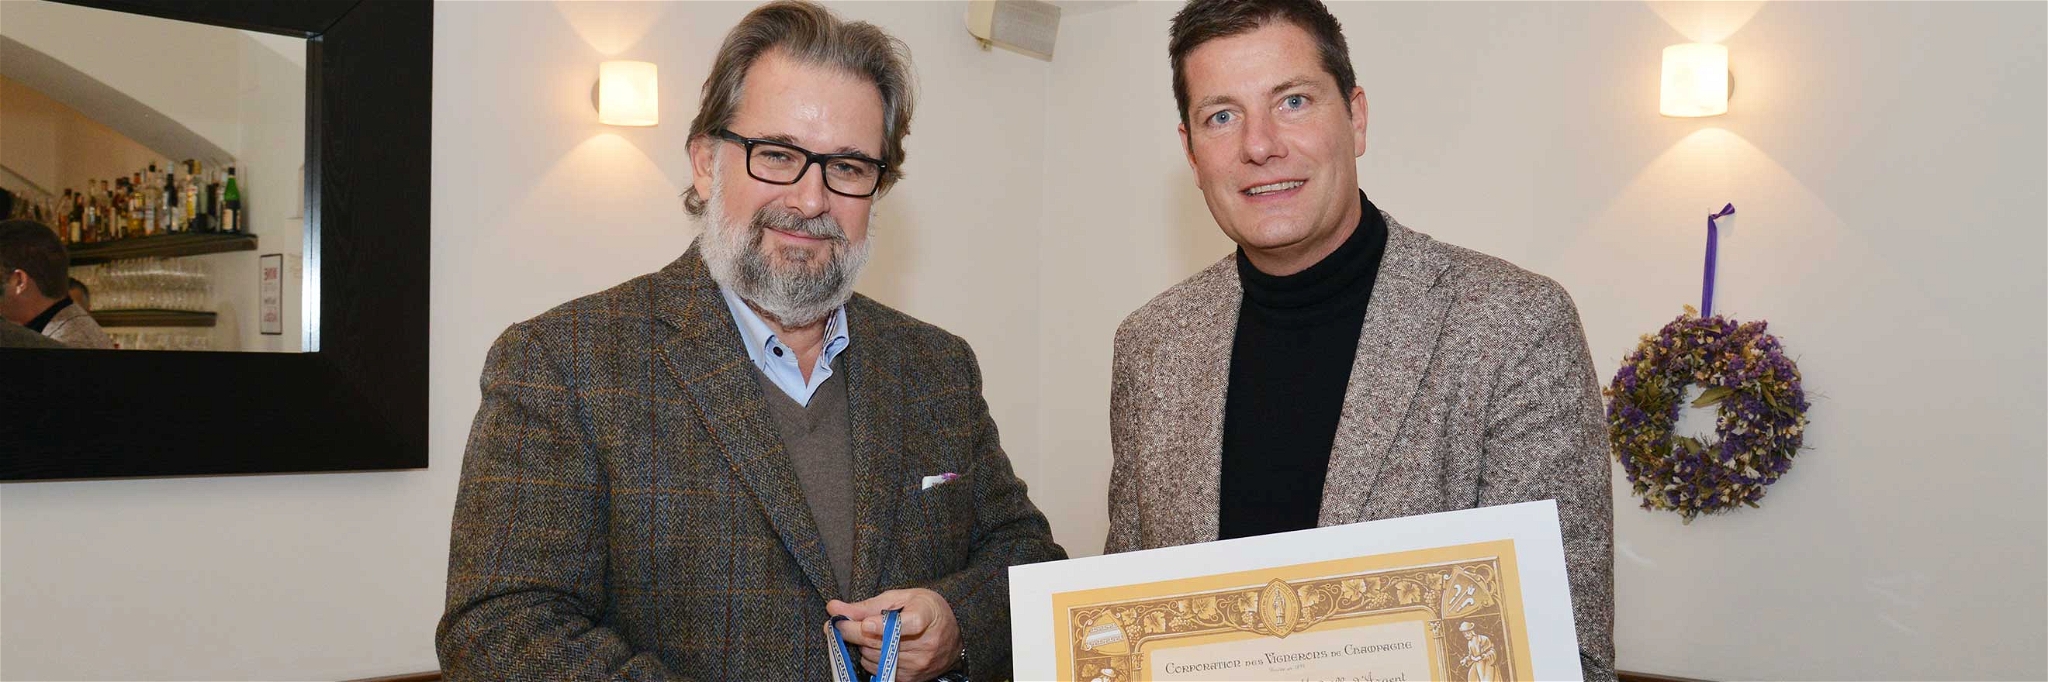 Peter Moser mit Christian Josephi bei der Überreichung der Auszeichnung im Wiener Restaurant »Fuhrmann«. 